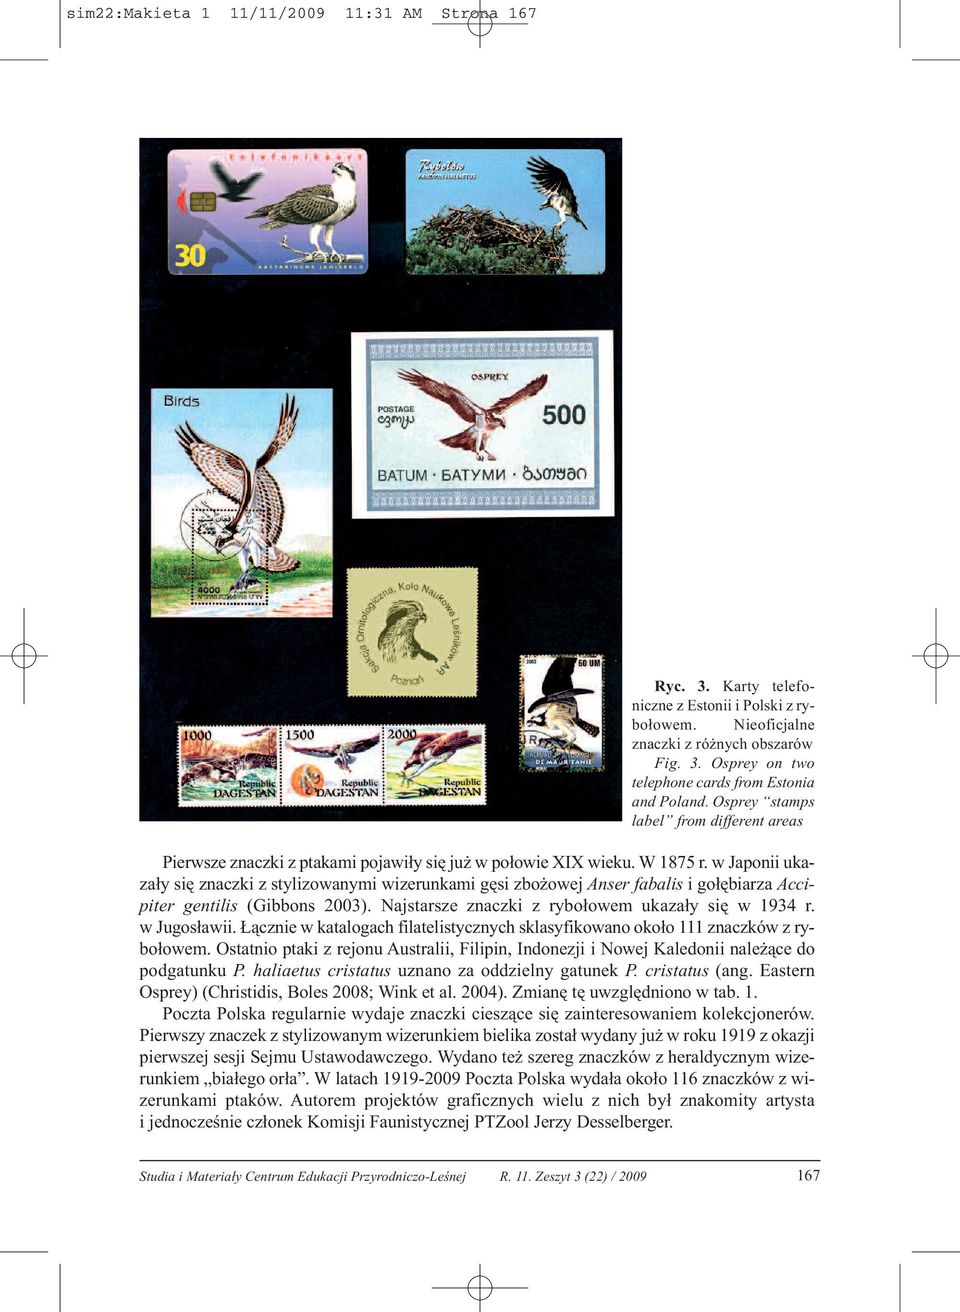 w Japonii ukazały się znaczki z stylizowanymi wizerunkami gęsi zbożowej Anser fabalis i gołębiarza Accipiter gentilis (Gibbons 2003). Najstarsze znaczki z rybołowem ukazały się w 1934 r. w Jugosławii.